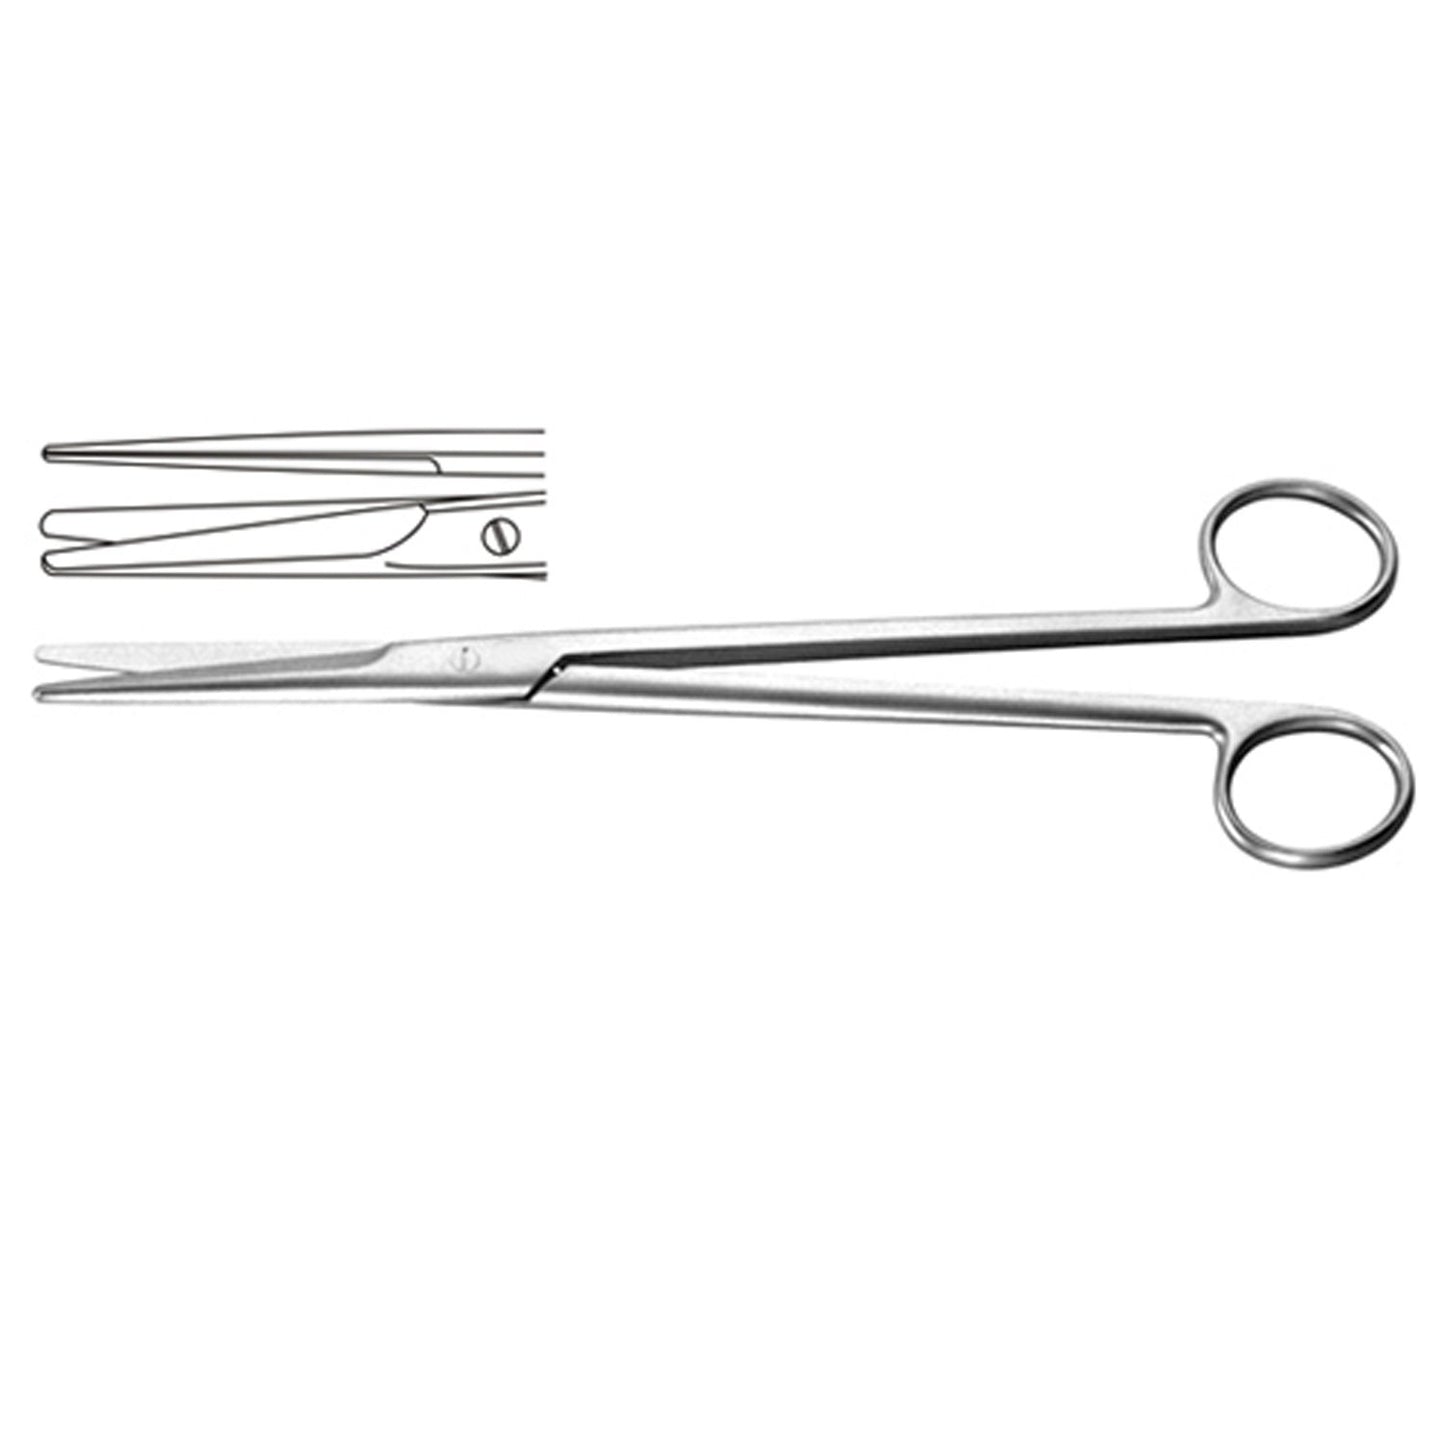 Mayo-harrington Dissecting Scissors